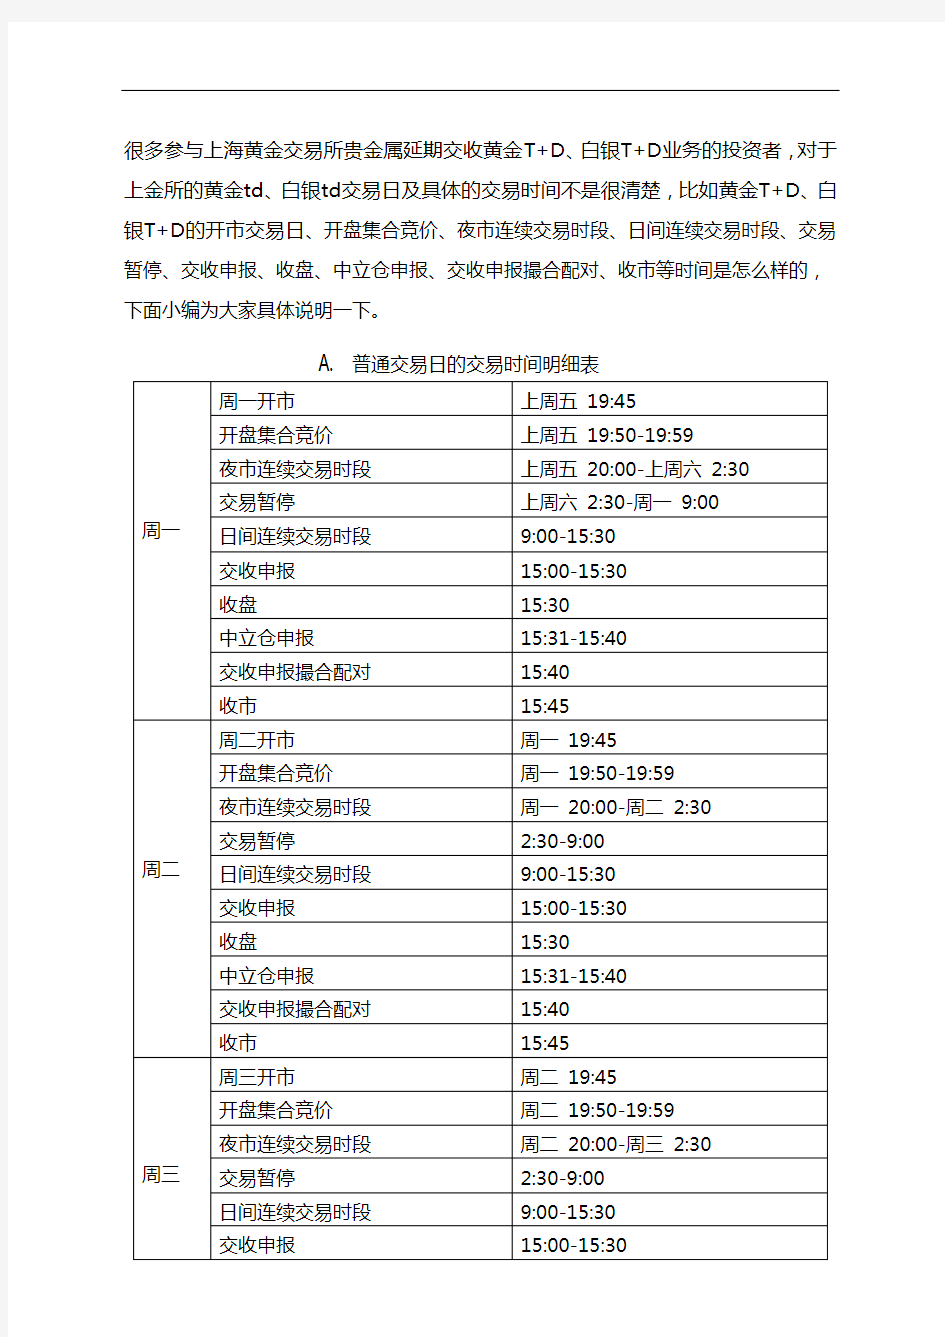 上海黄金交易所黄金T+D、白银T+D交易日交易时间明细表